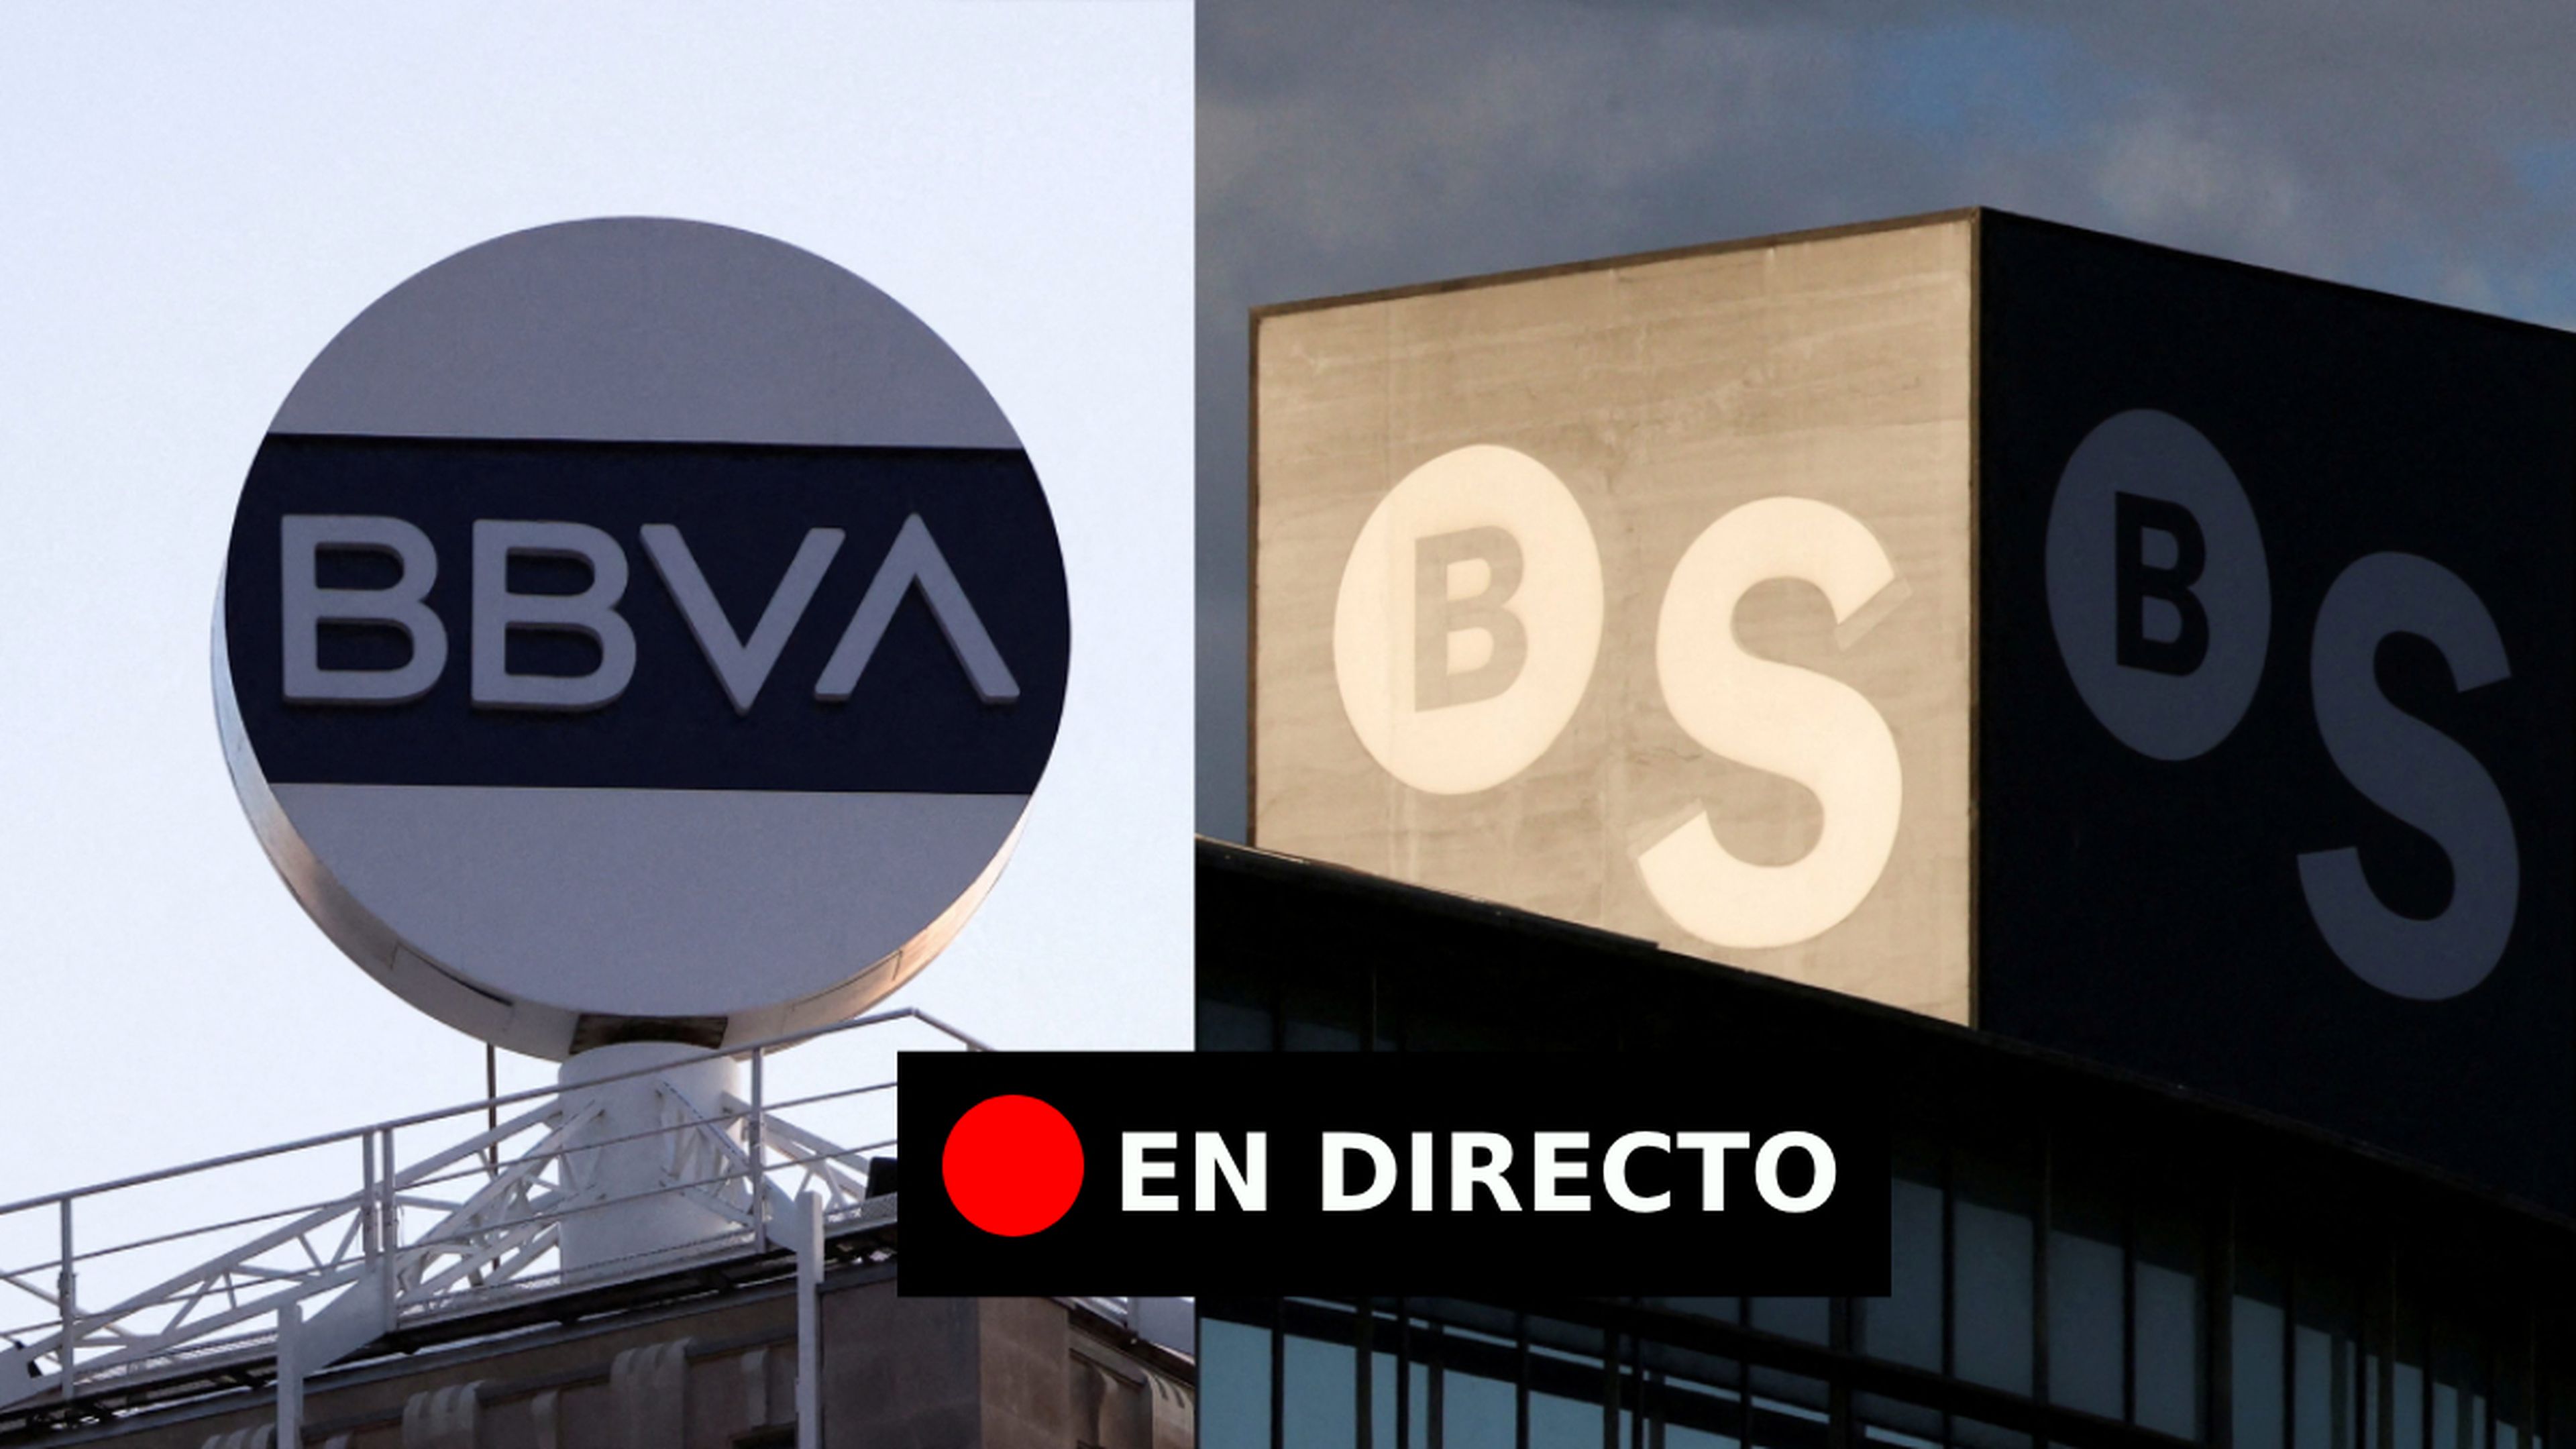 Opa hostil de BBVA sobre Sabadell, en directo: última hora